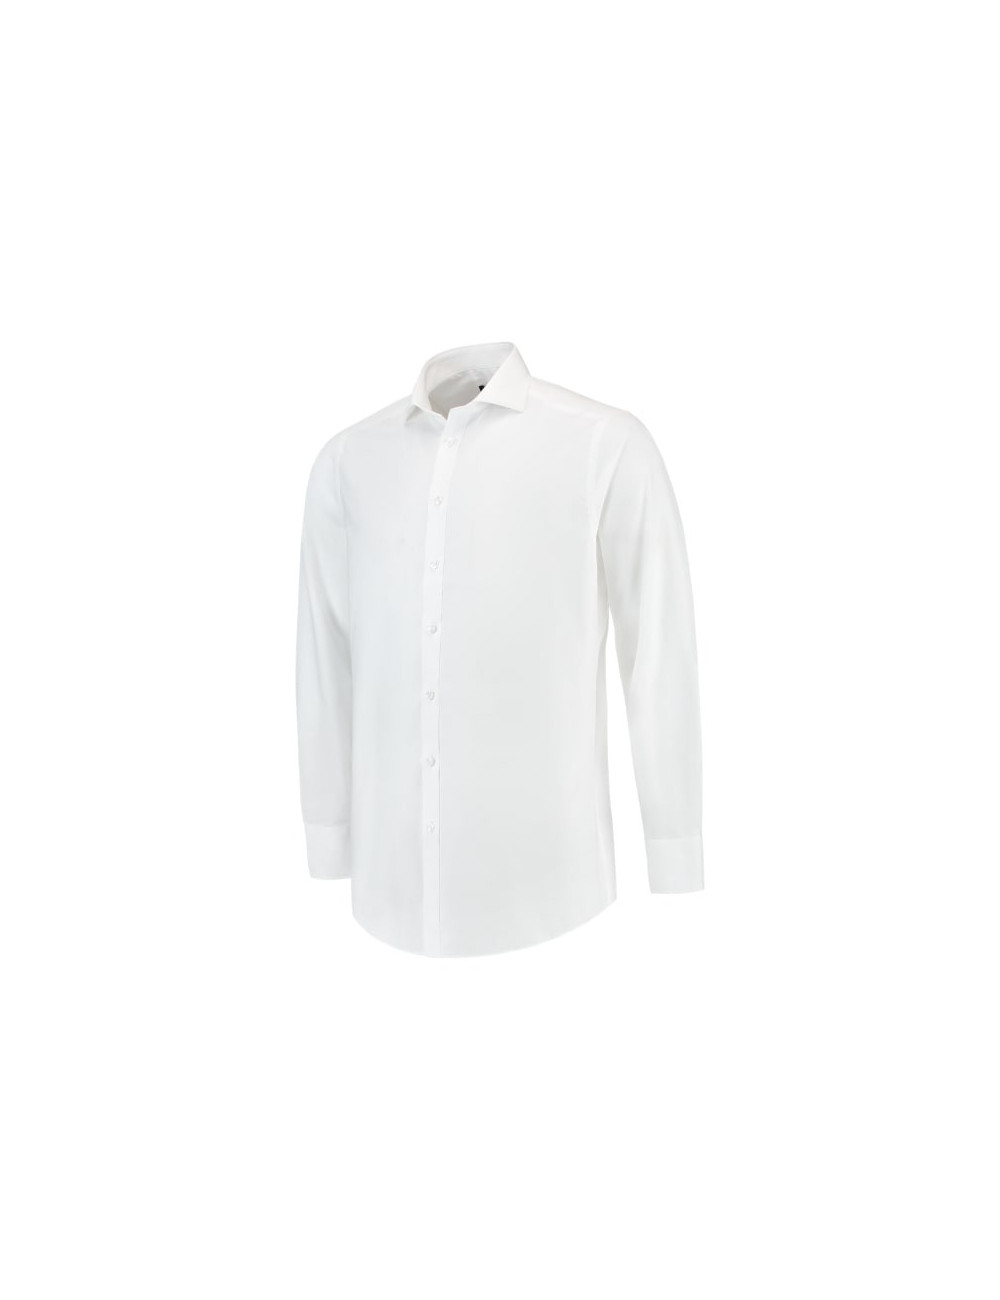 Tailliertes Herrenhemd T21 weiß Adler Tricorp